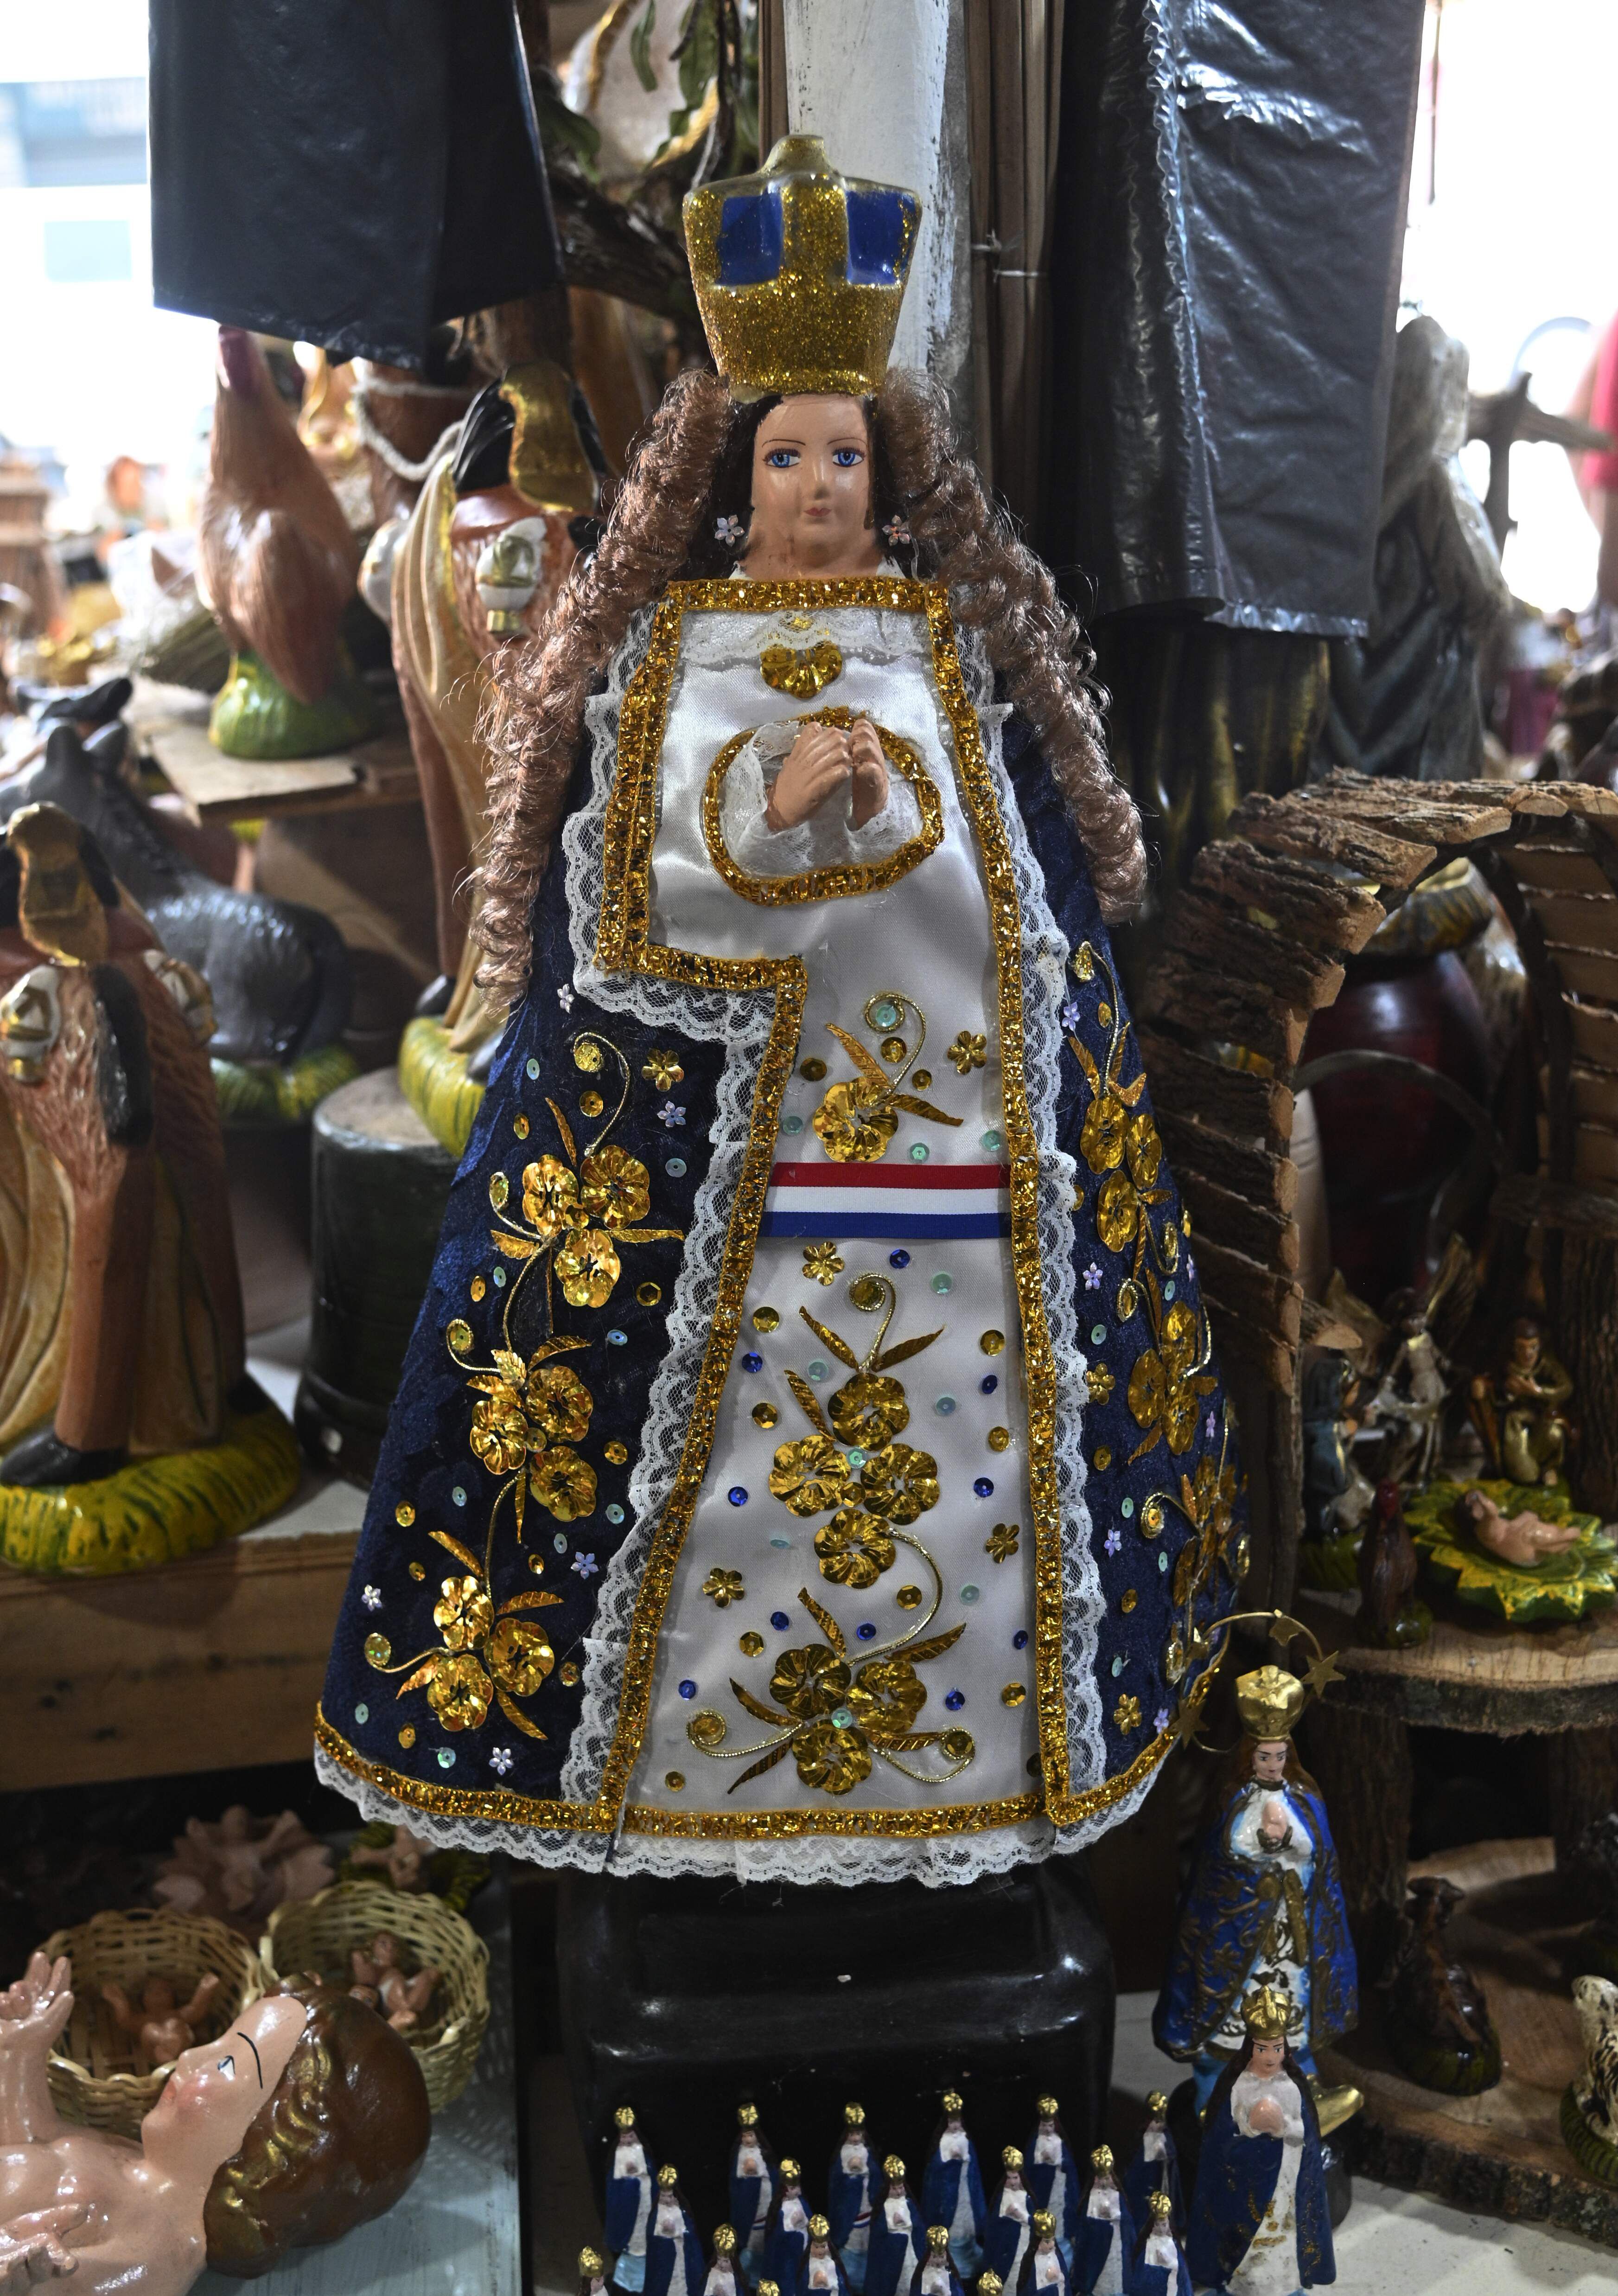 Figuras de la Virgen de Caacupé, con cabello peinado en bucles y vestimenta muy elaborada, valor de G. 300.000.